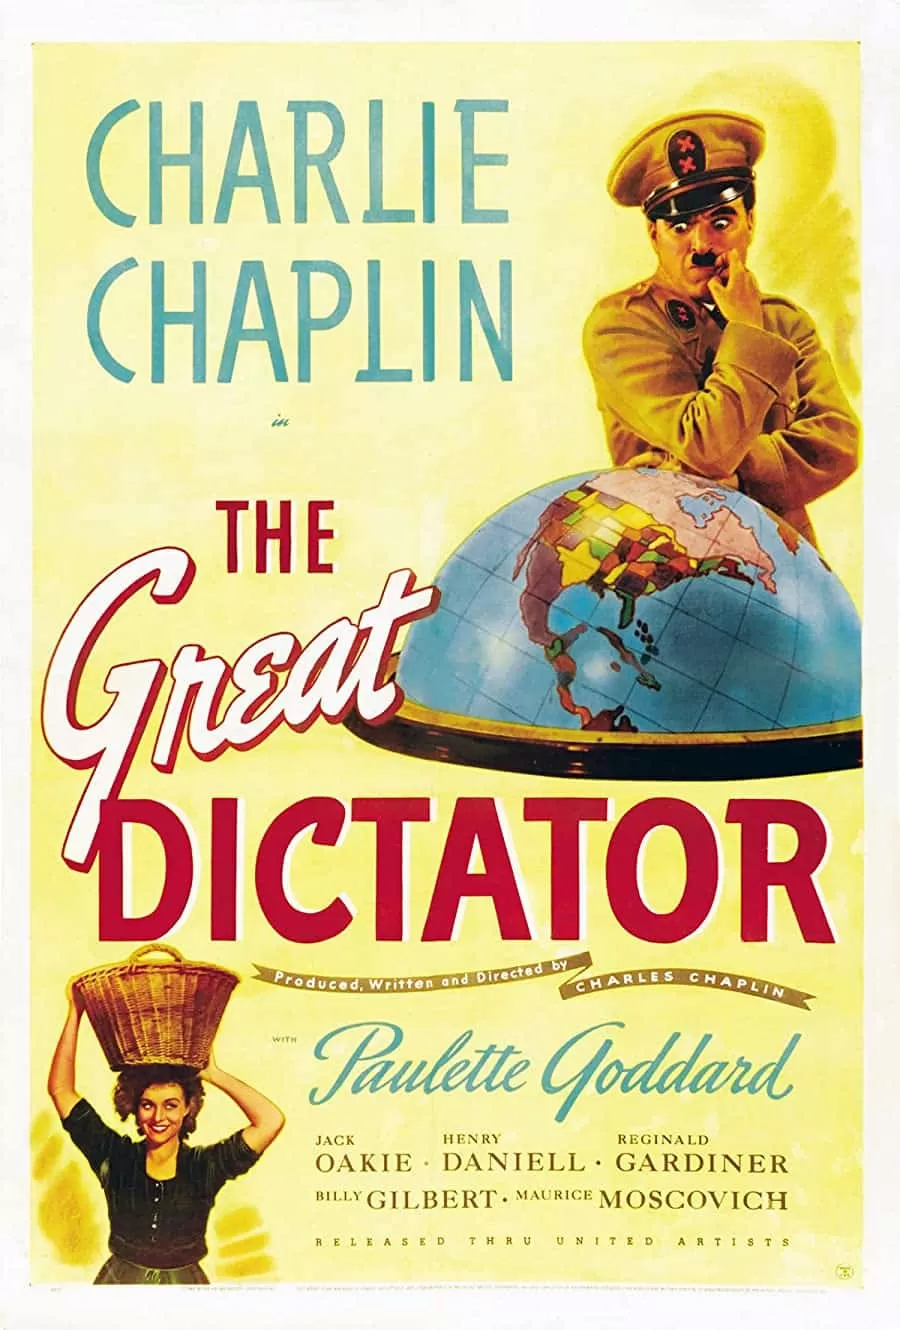 فیلم The Great Dictator 1940